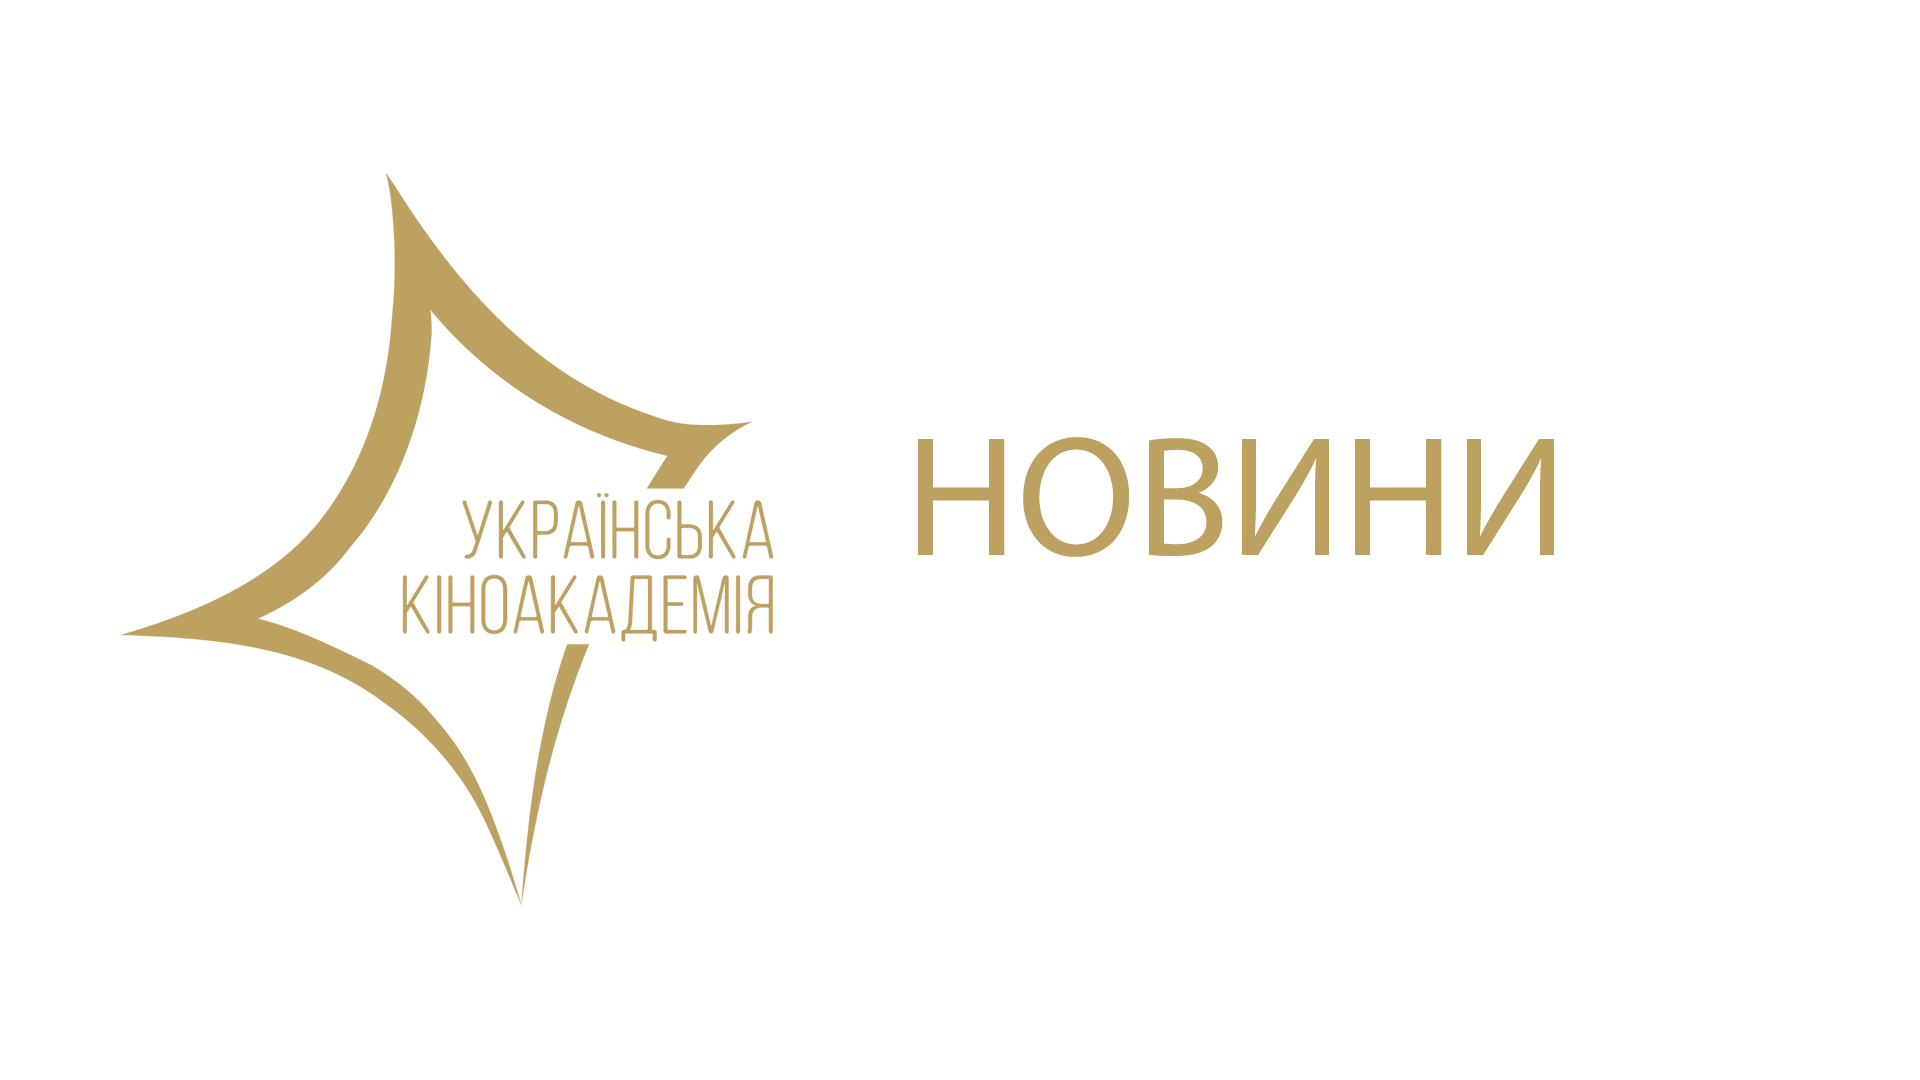 З 5 травня поновлено приймання заявок на членство в Українській кіноакадемії. Подати заявку на вступ можна до 15 листопада 2018 включно, заповнивши онлайн-форму